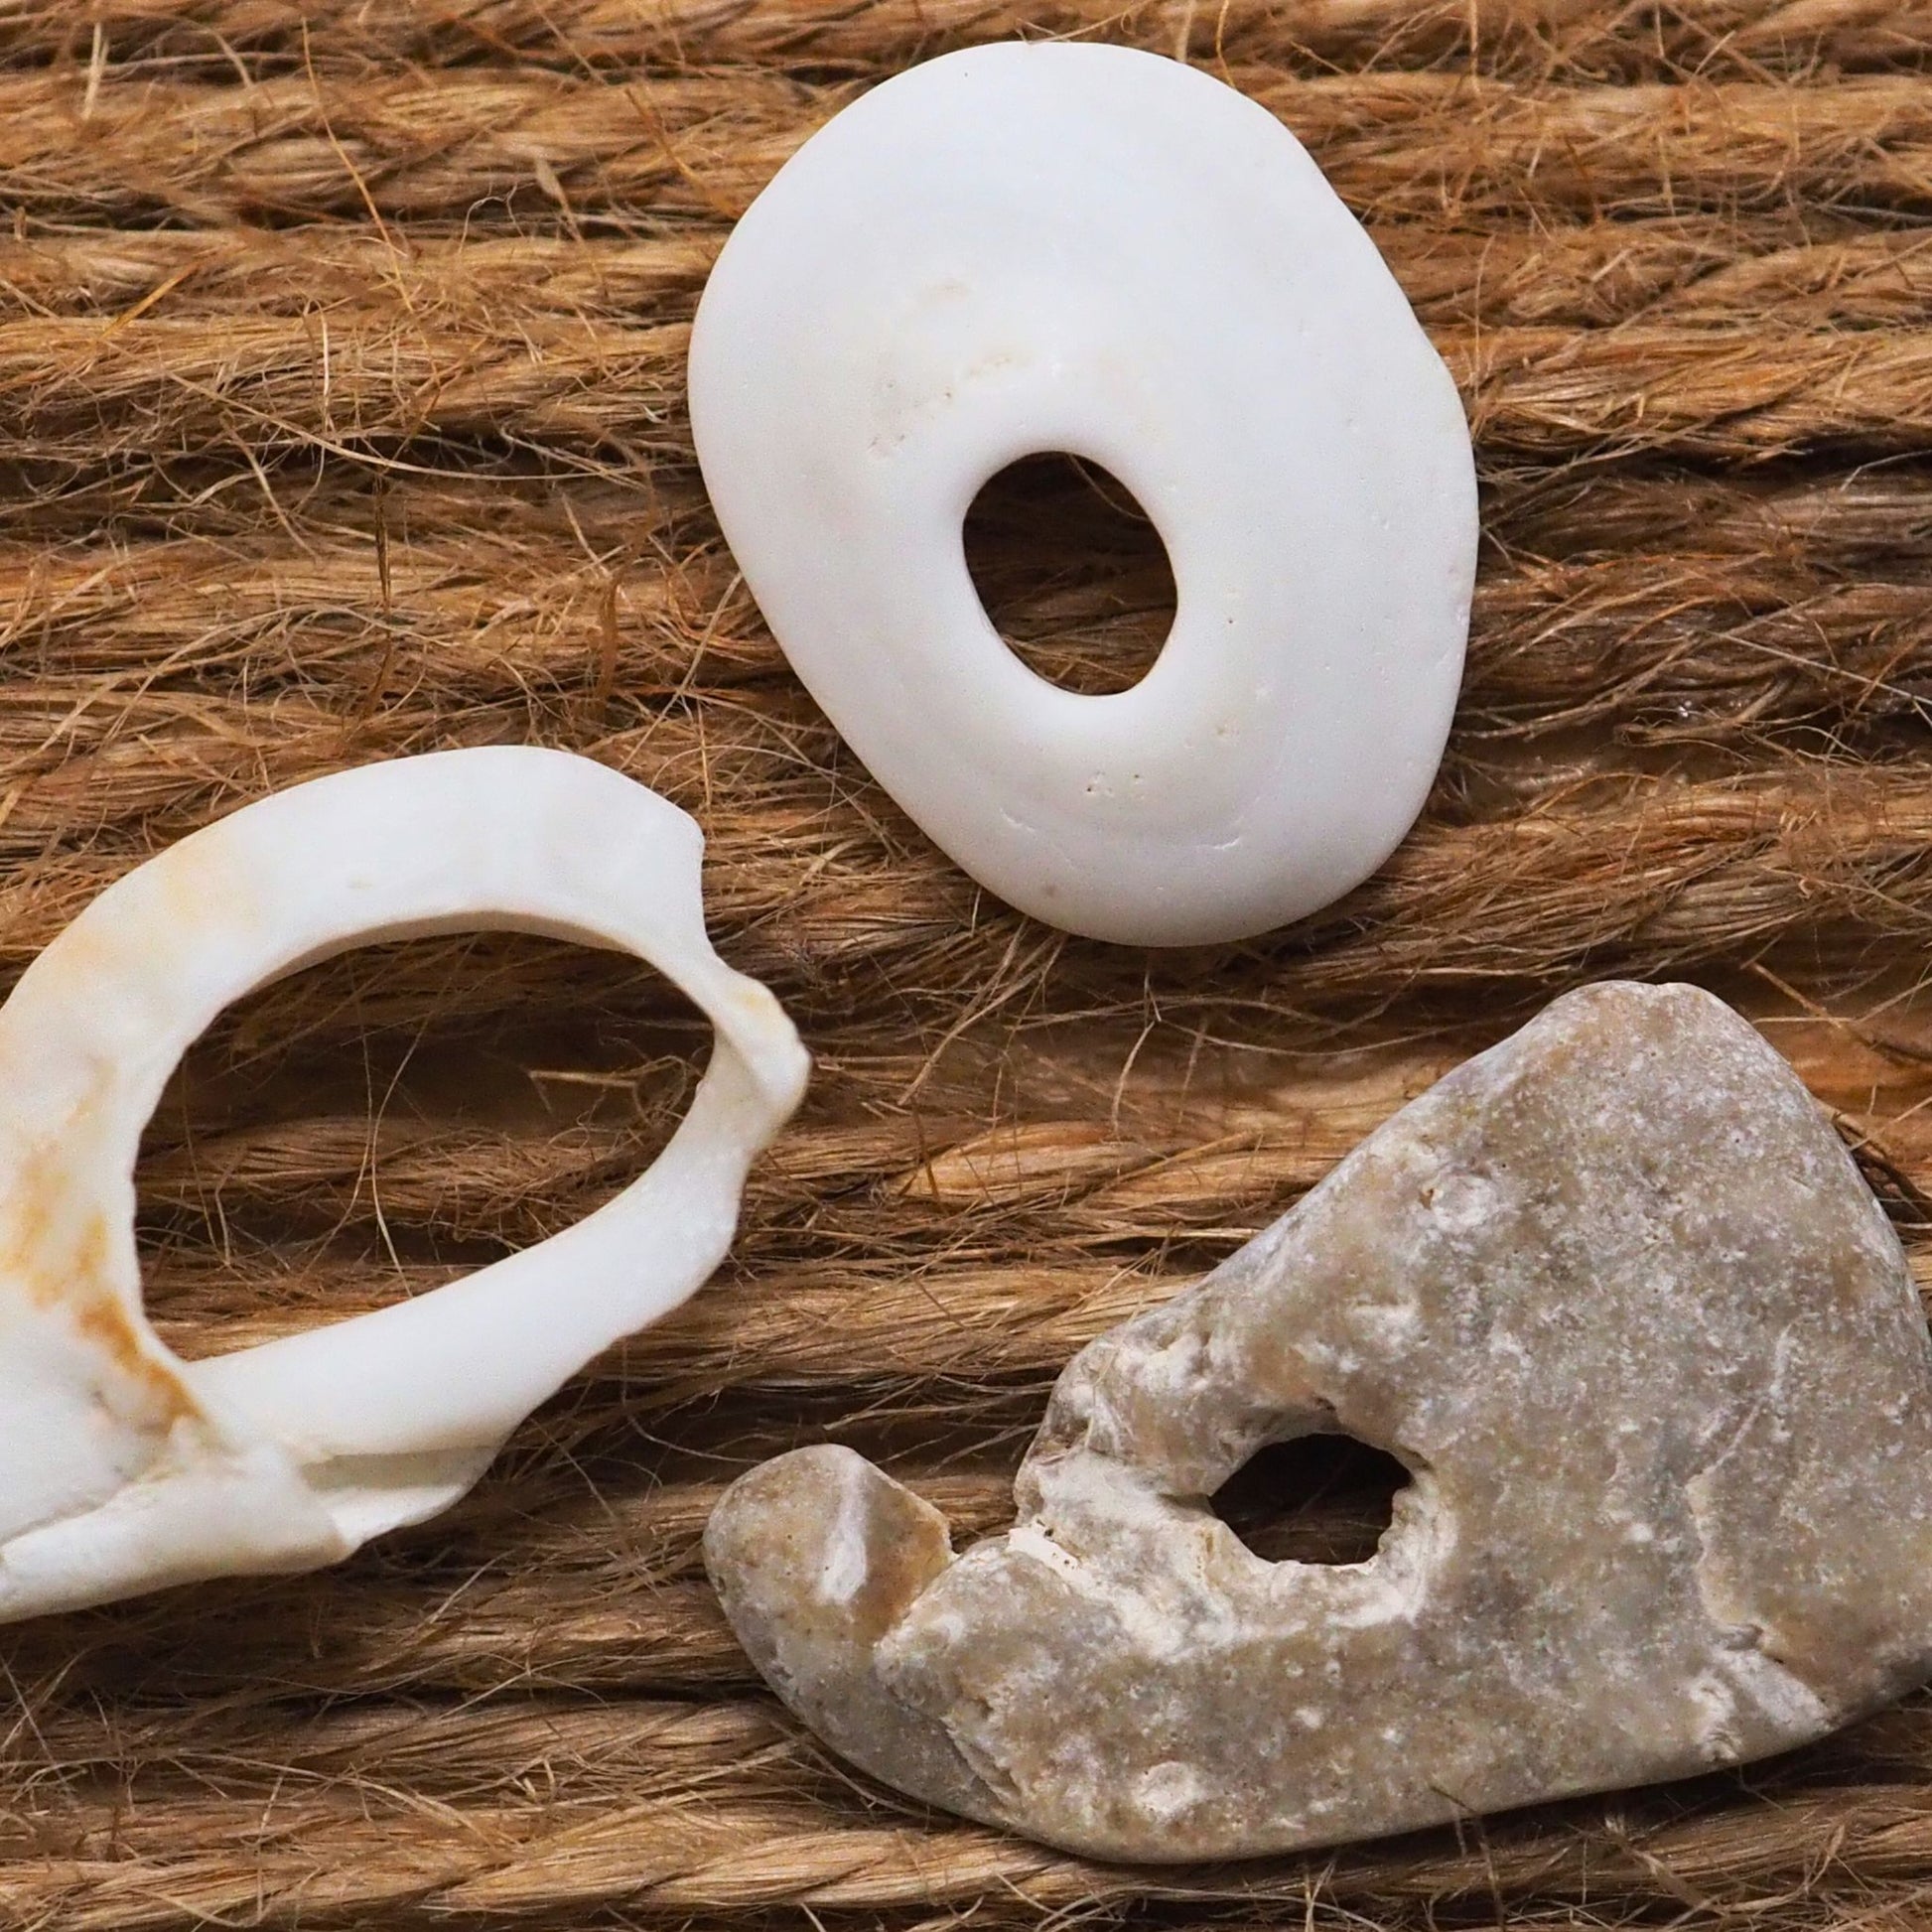 Three sea shells with holes